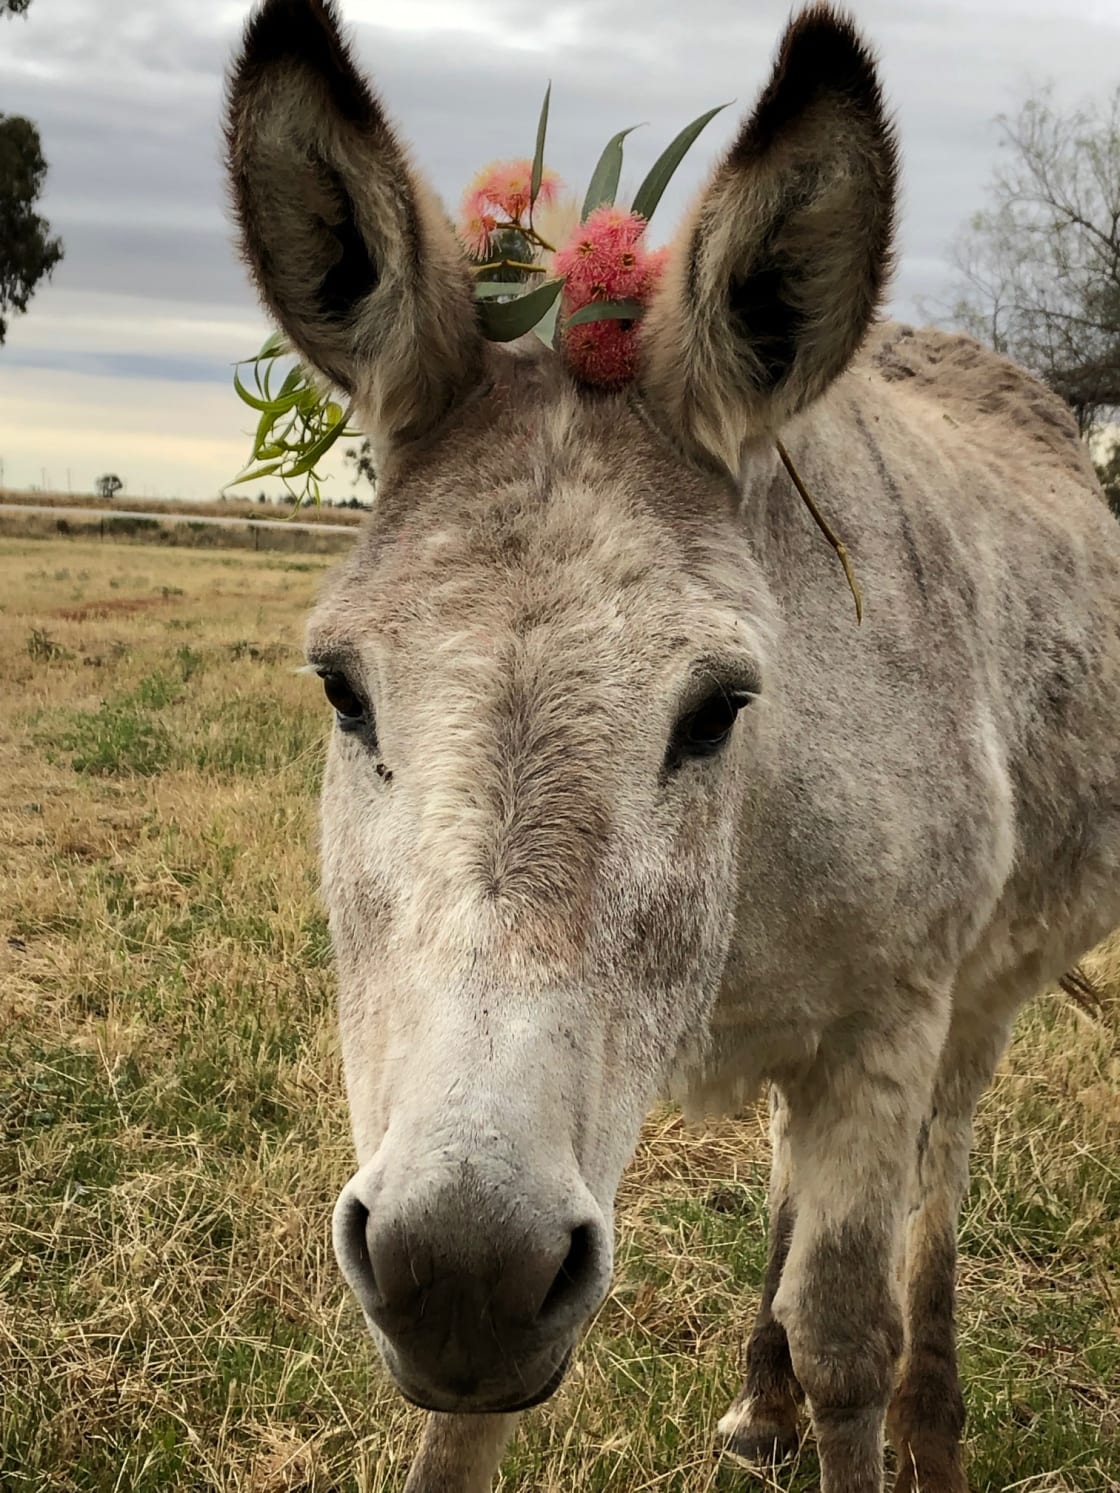 Fargo the donkey